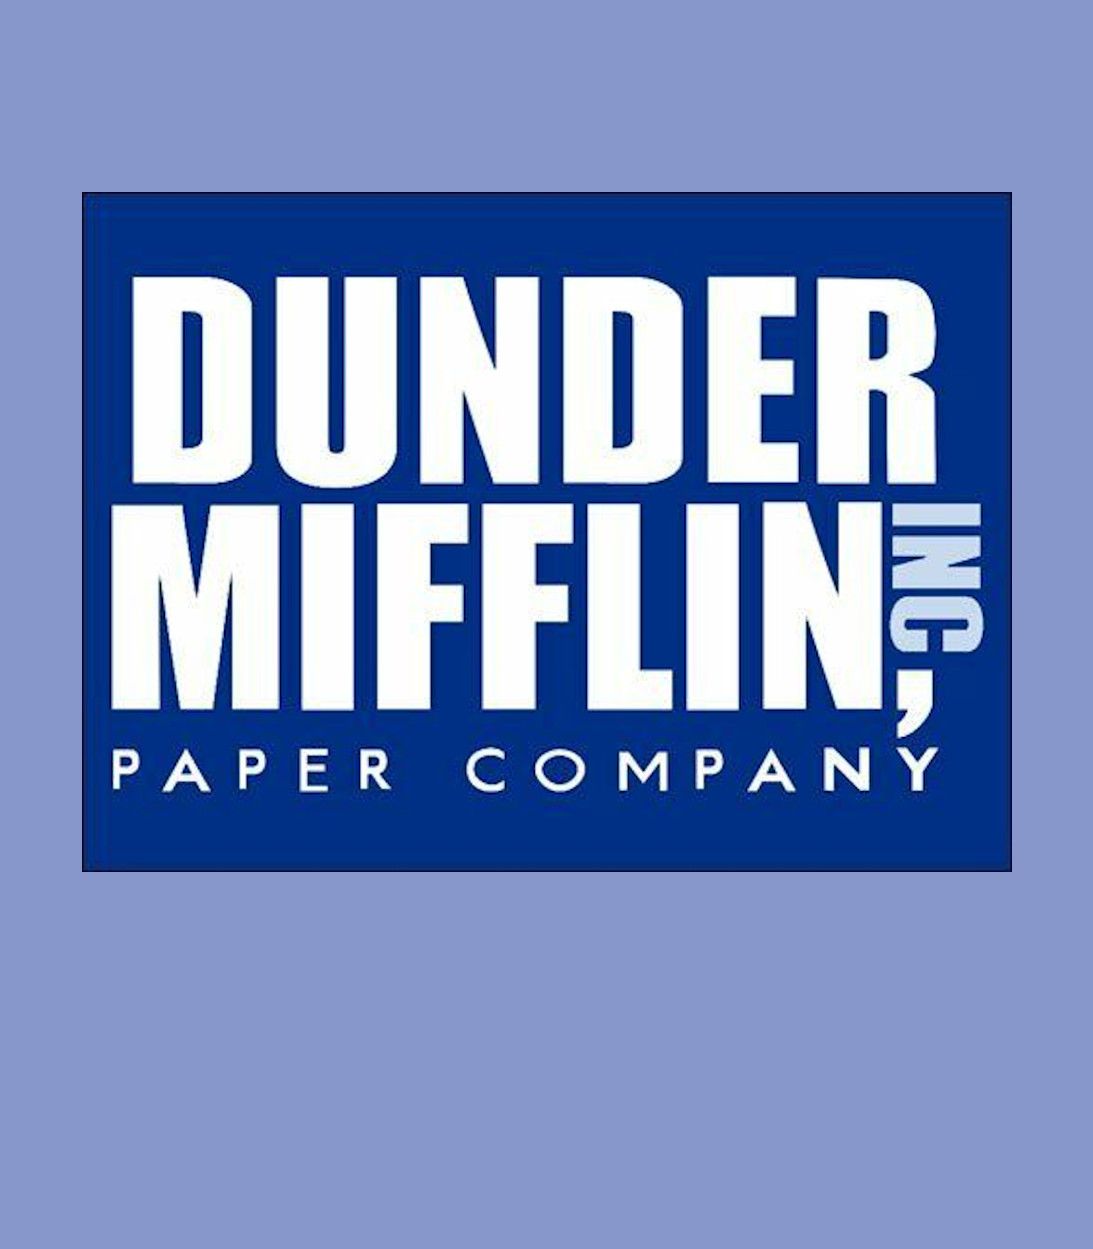 1093 The Office Dunder Mifflin logo